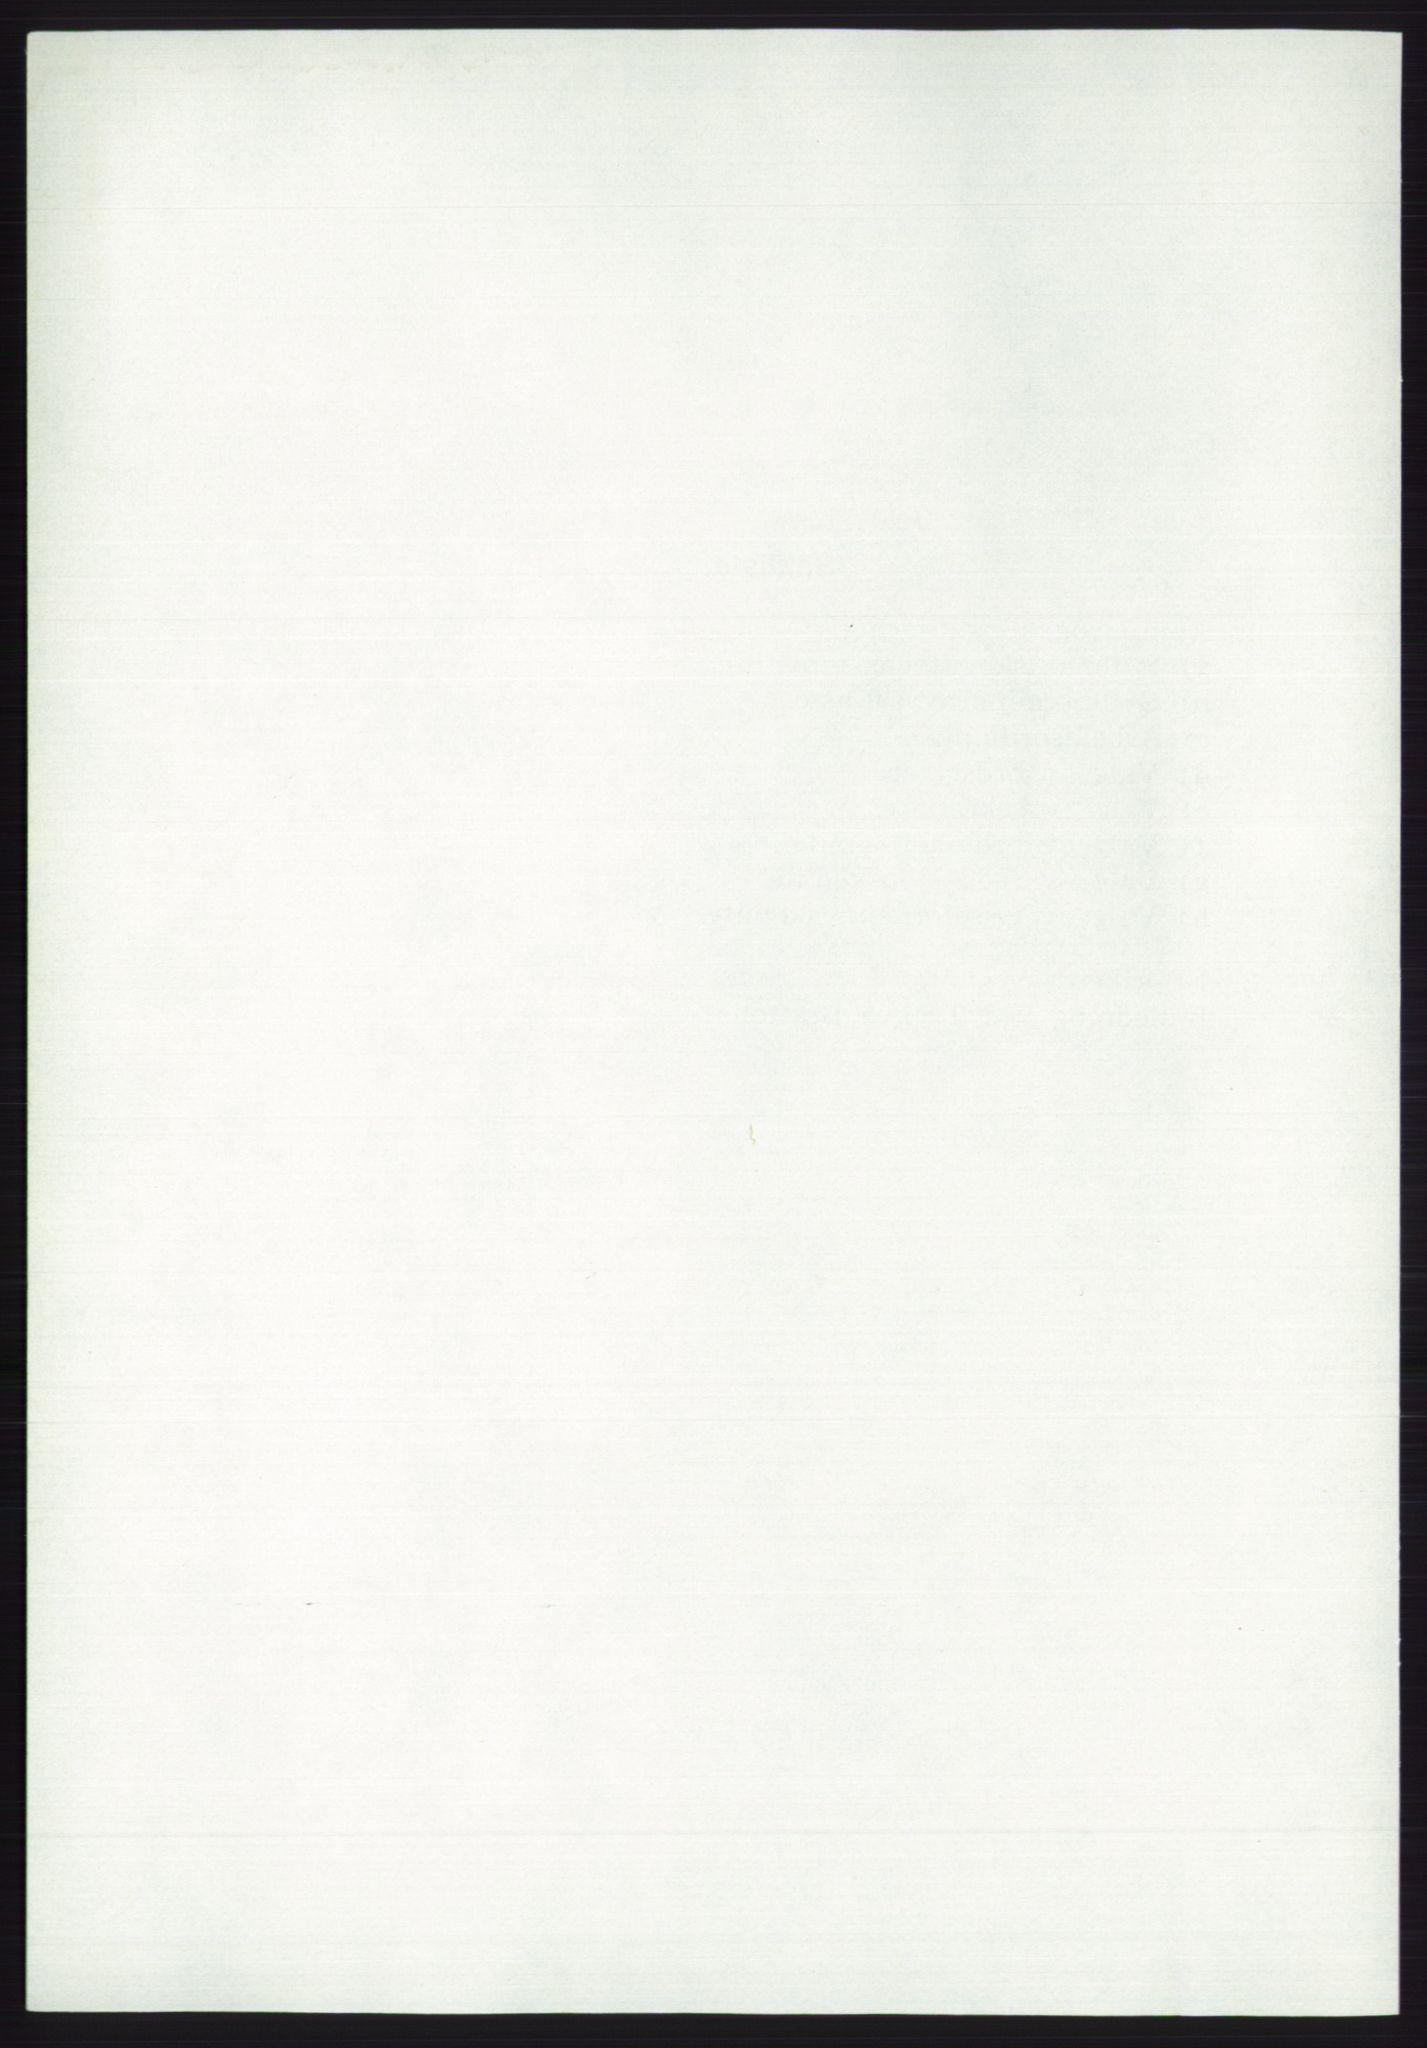 Det norske Arbeiderparti - publikasjoner, AAB/-/-/-: Protokoll over forhandlingene på det ekstraordinære landsmøte 21.-22. april 1972, 1972, p. 6